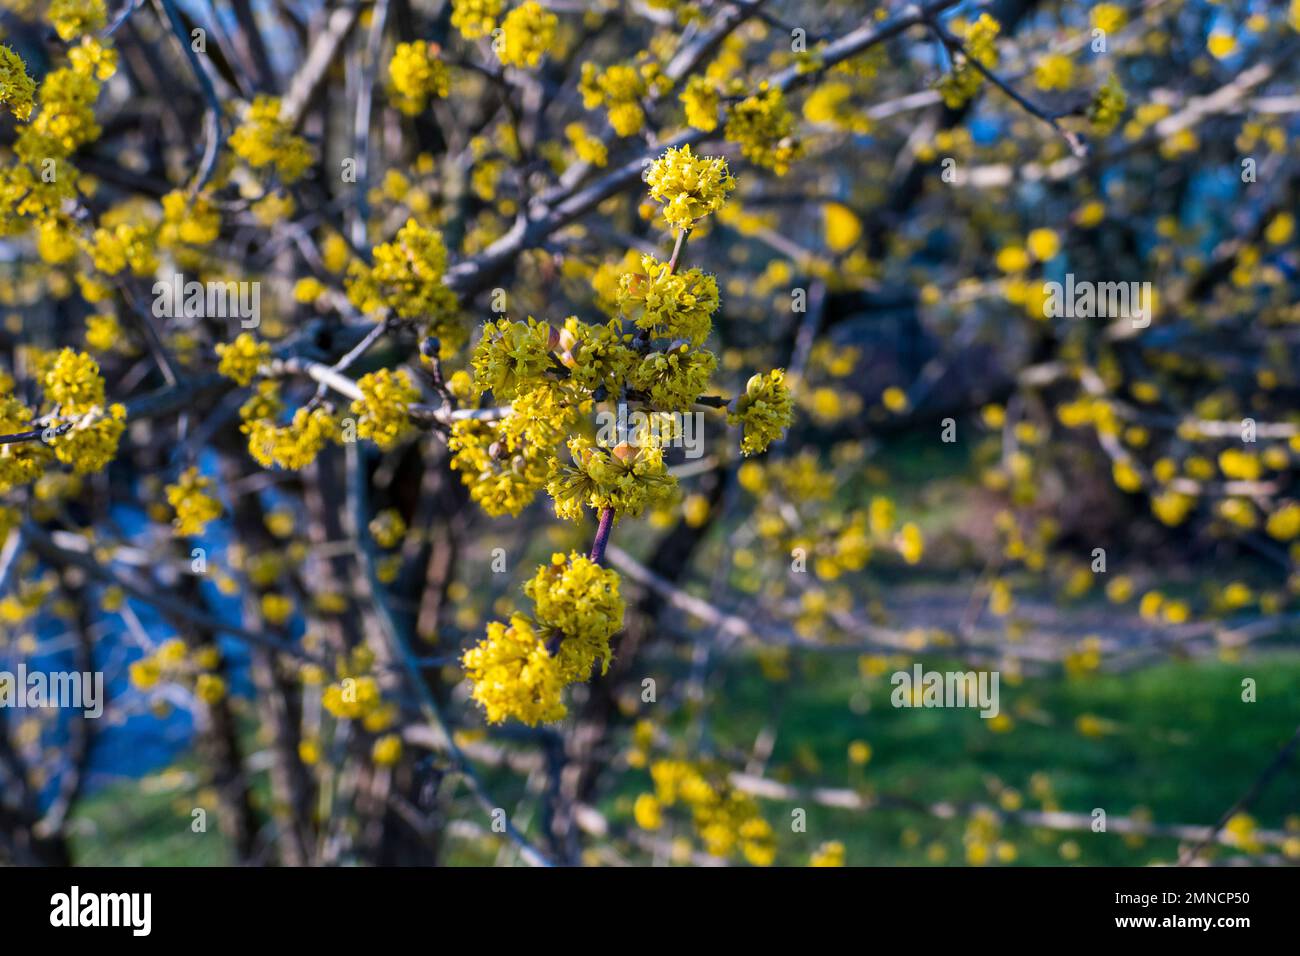 Japanische Kornelkirsche Cornus mas mit gelben Blüten im Frühjahr Foto Stock